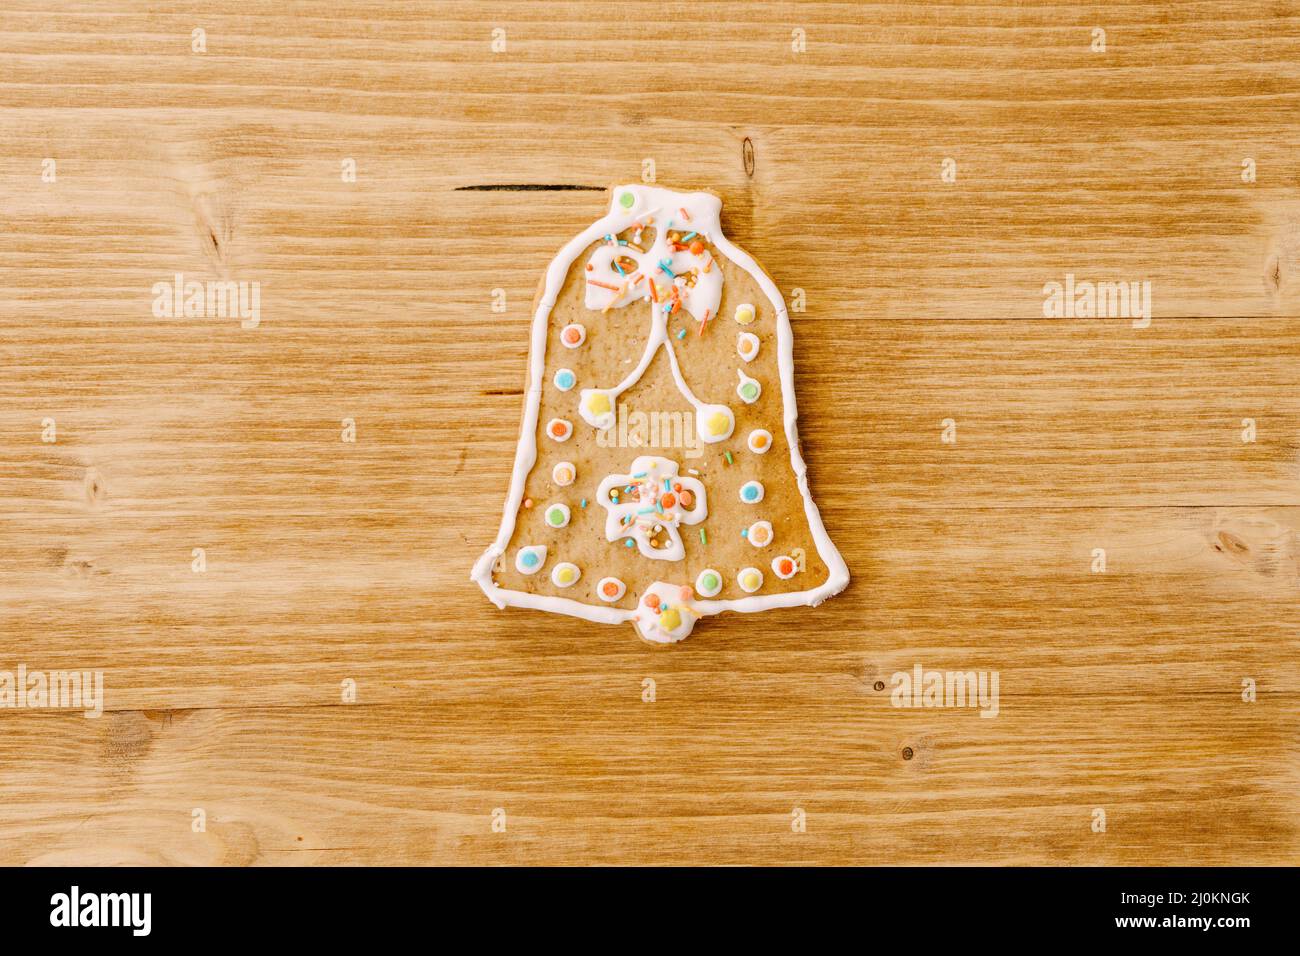 Pan de jengibre en forma de campana, decorado con hielo y rociado, sobre un fondo de textura de madera clara. Foto de stock